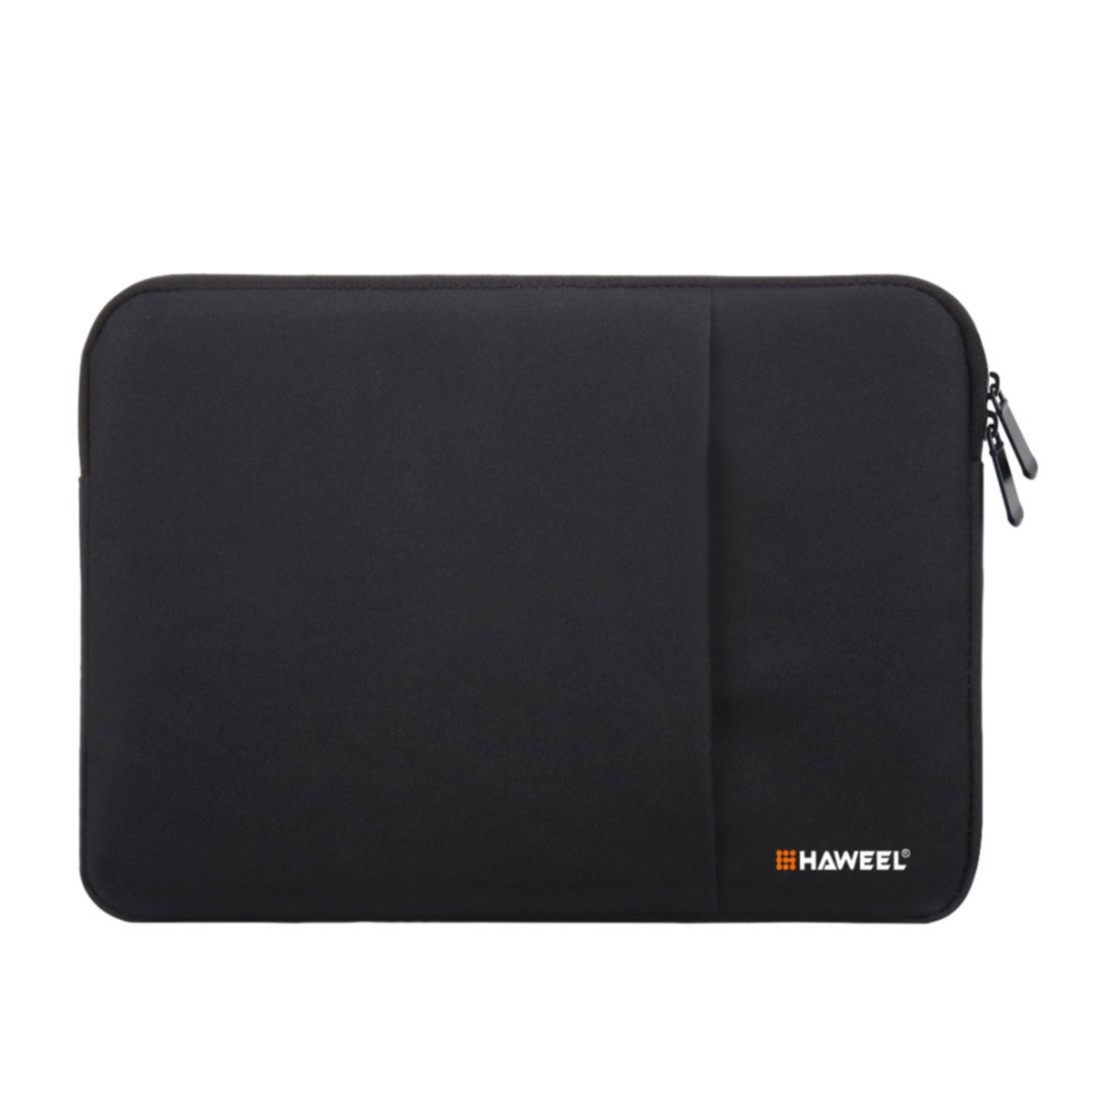 Image of Haweel - 13" Notebooktasche Schutzhülle Sleeve aus Oxford Material (MacBook Air/Pro) - Schwarz bei Apfelkiste.ch